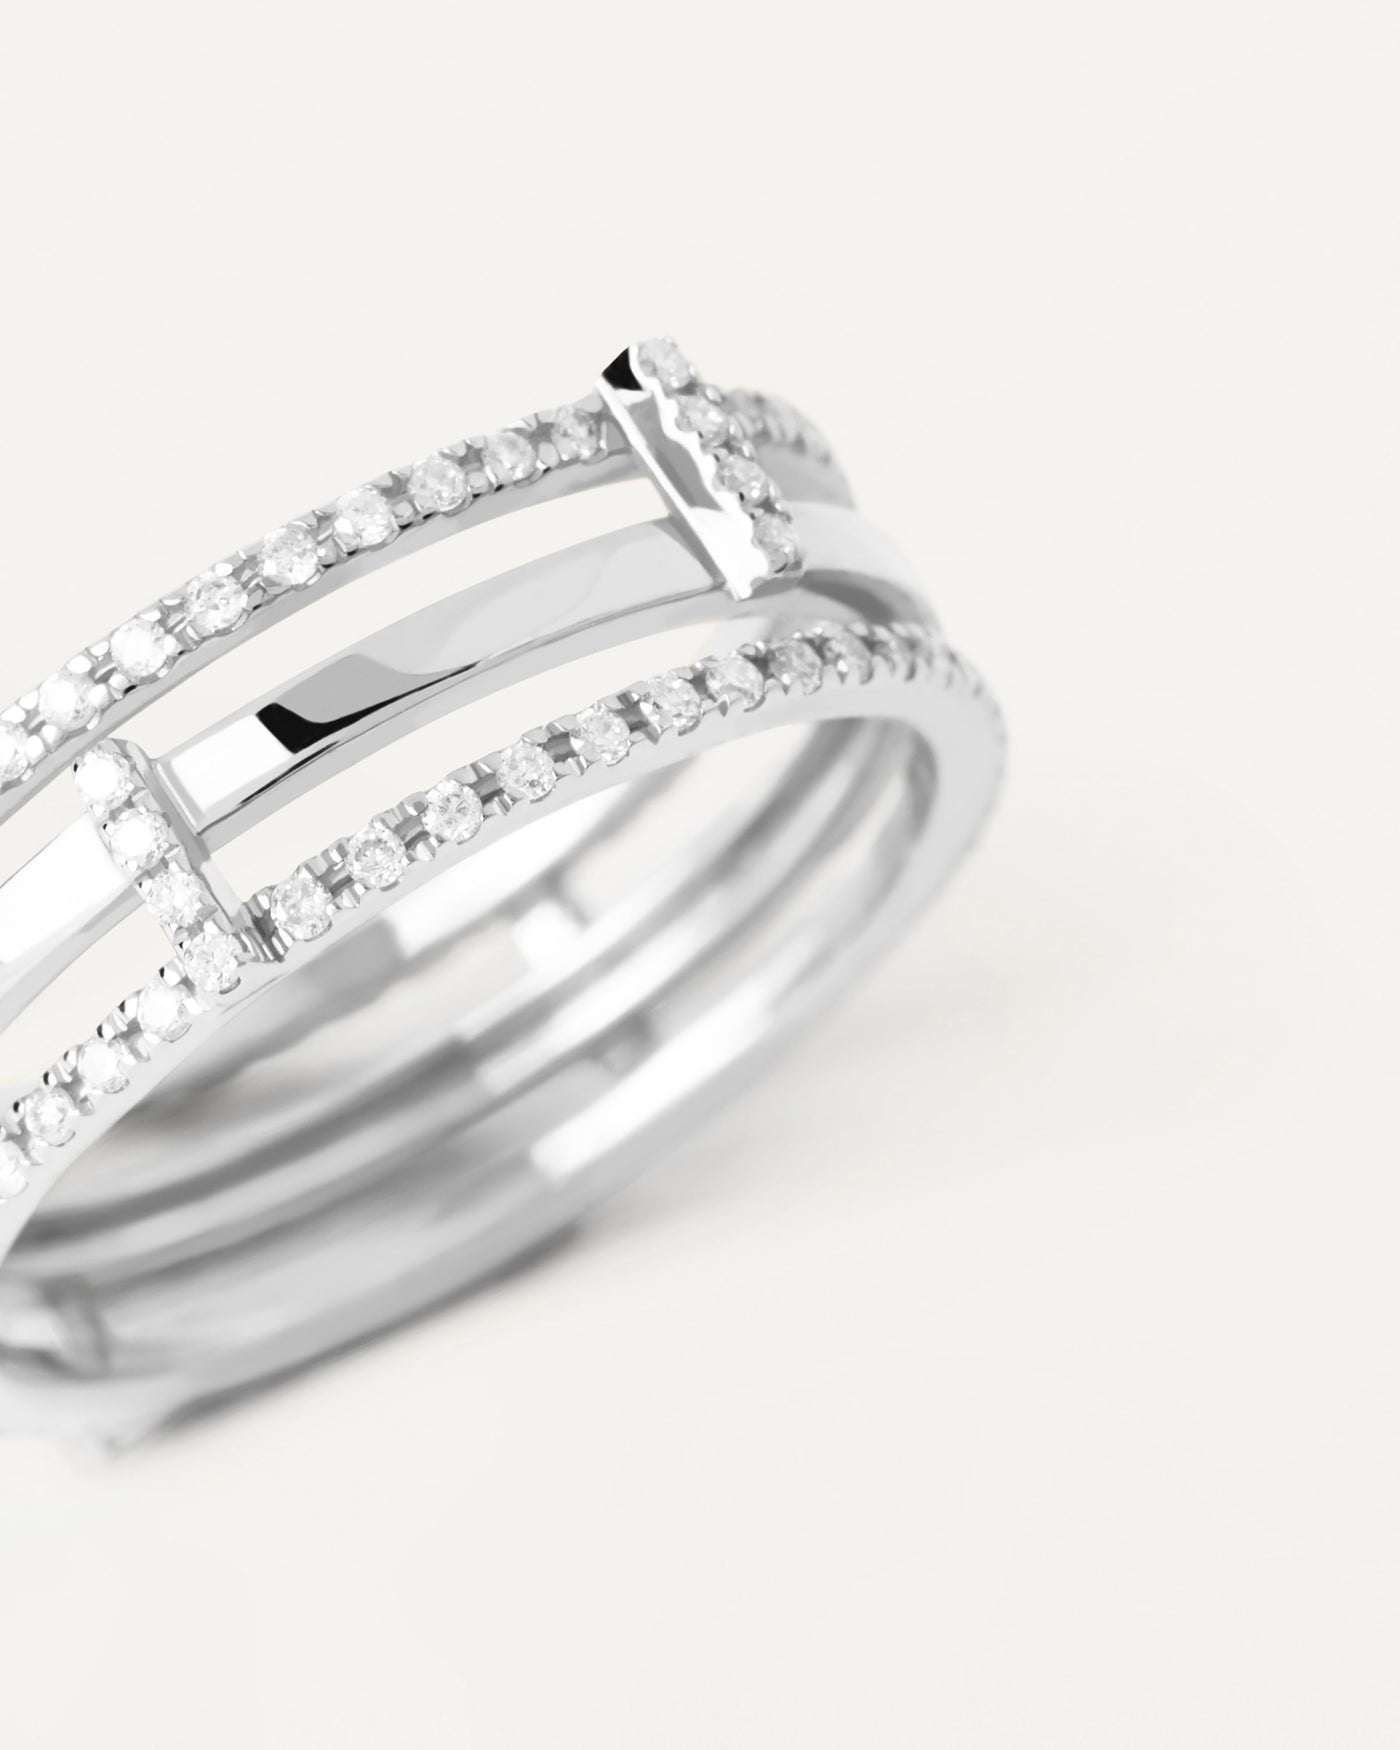 Eternity Fine jewelry rings